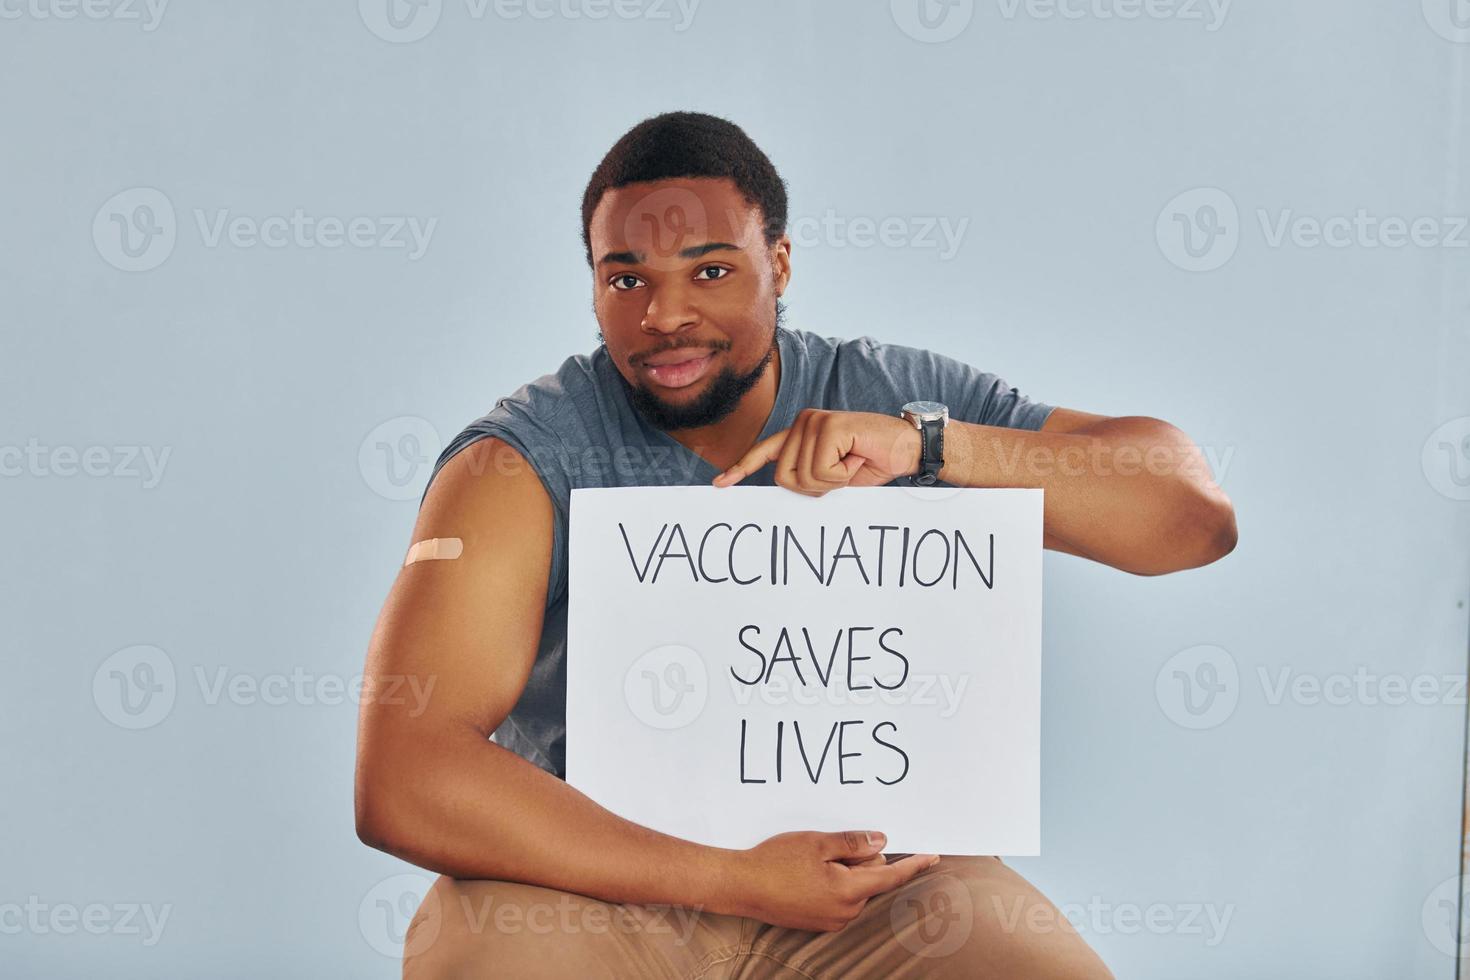 vaccinazione salva vite striscione. giovane africano americano uomo dopo vaccino iniezione foto